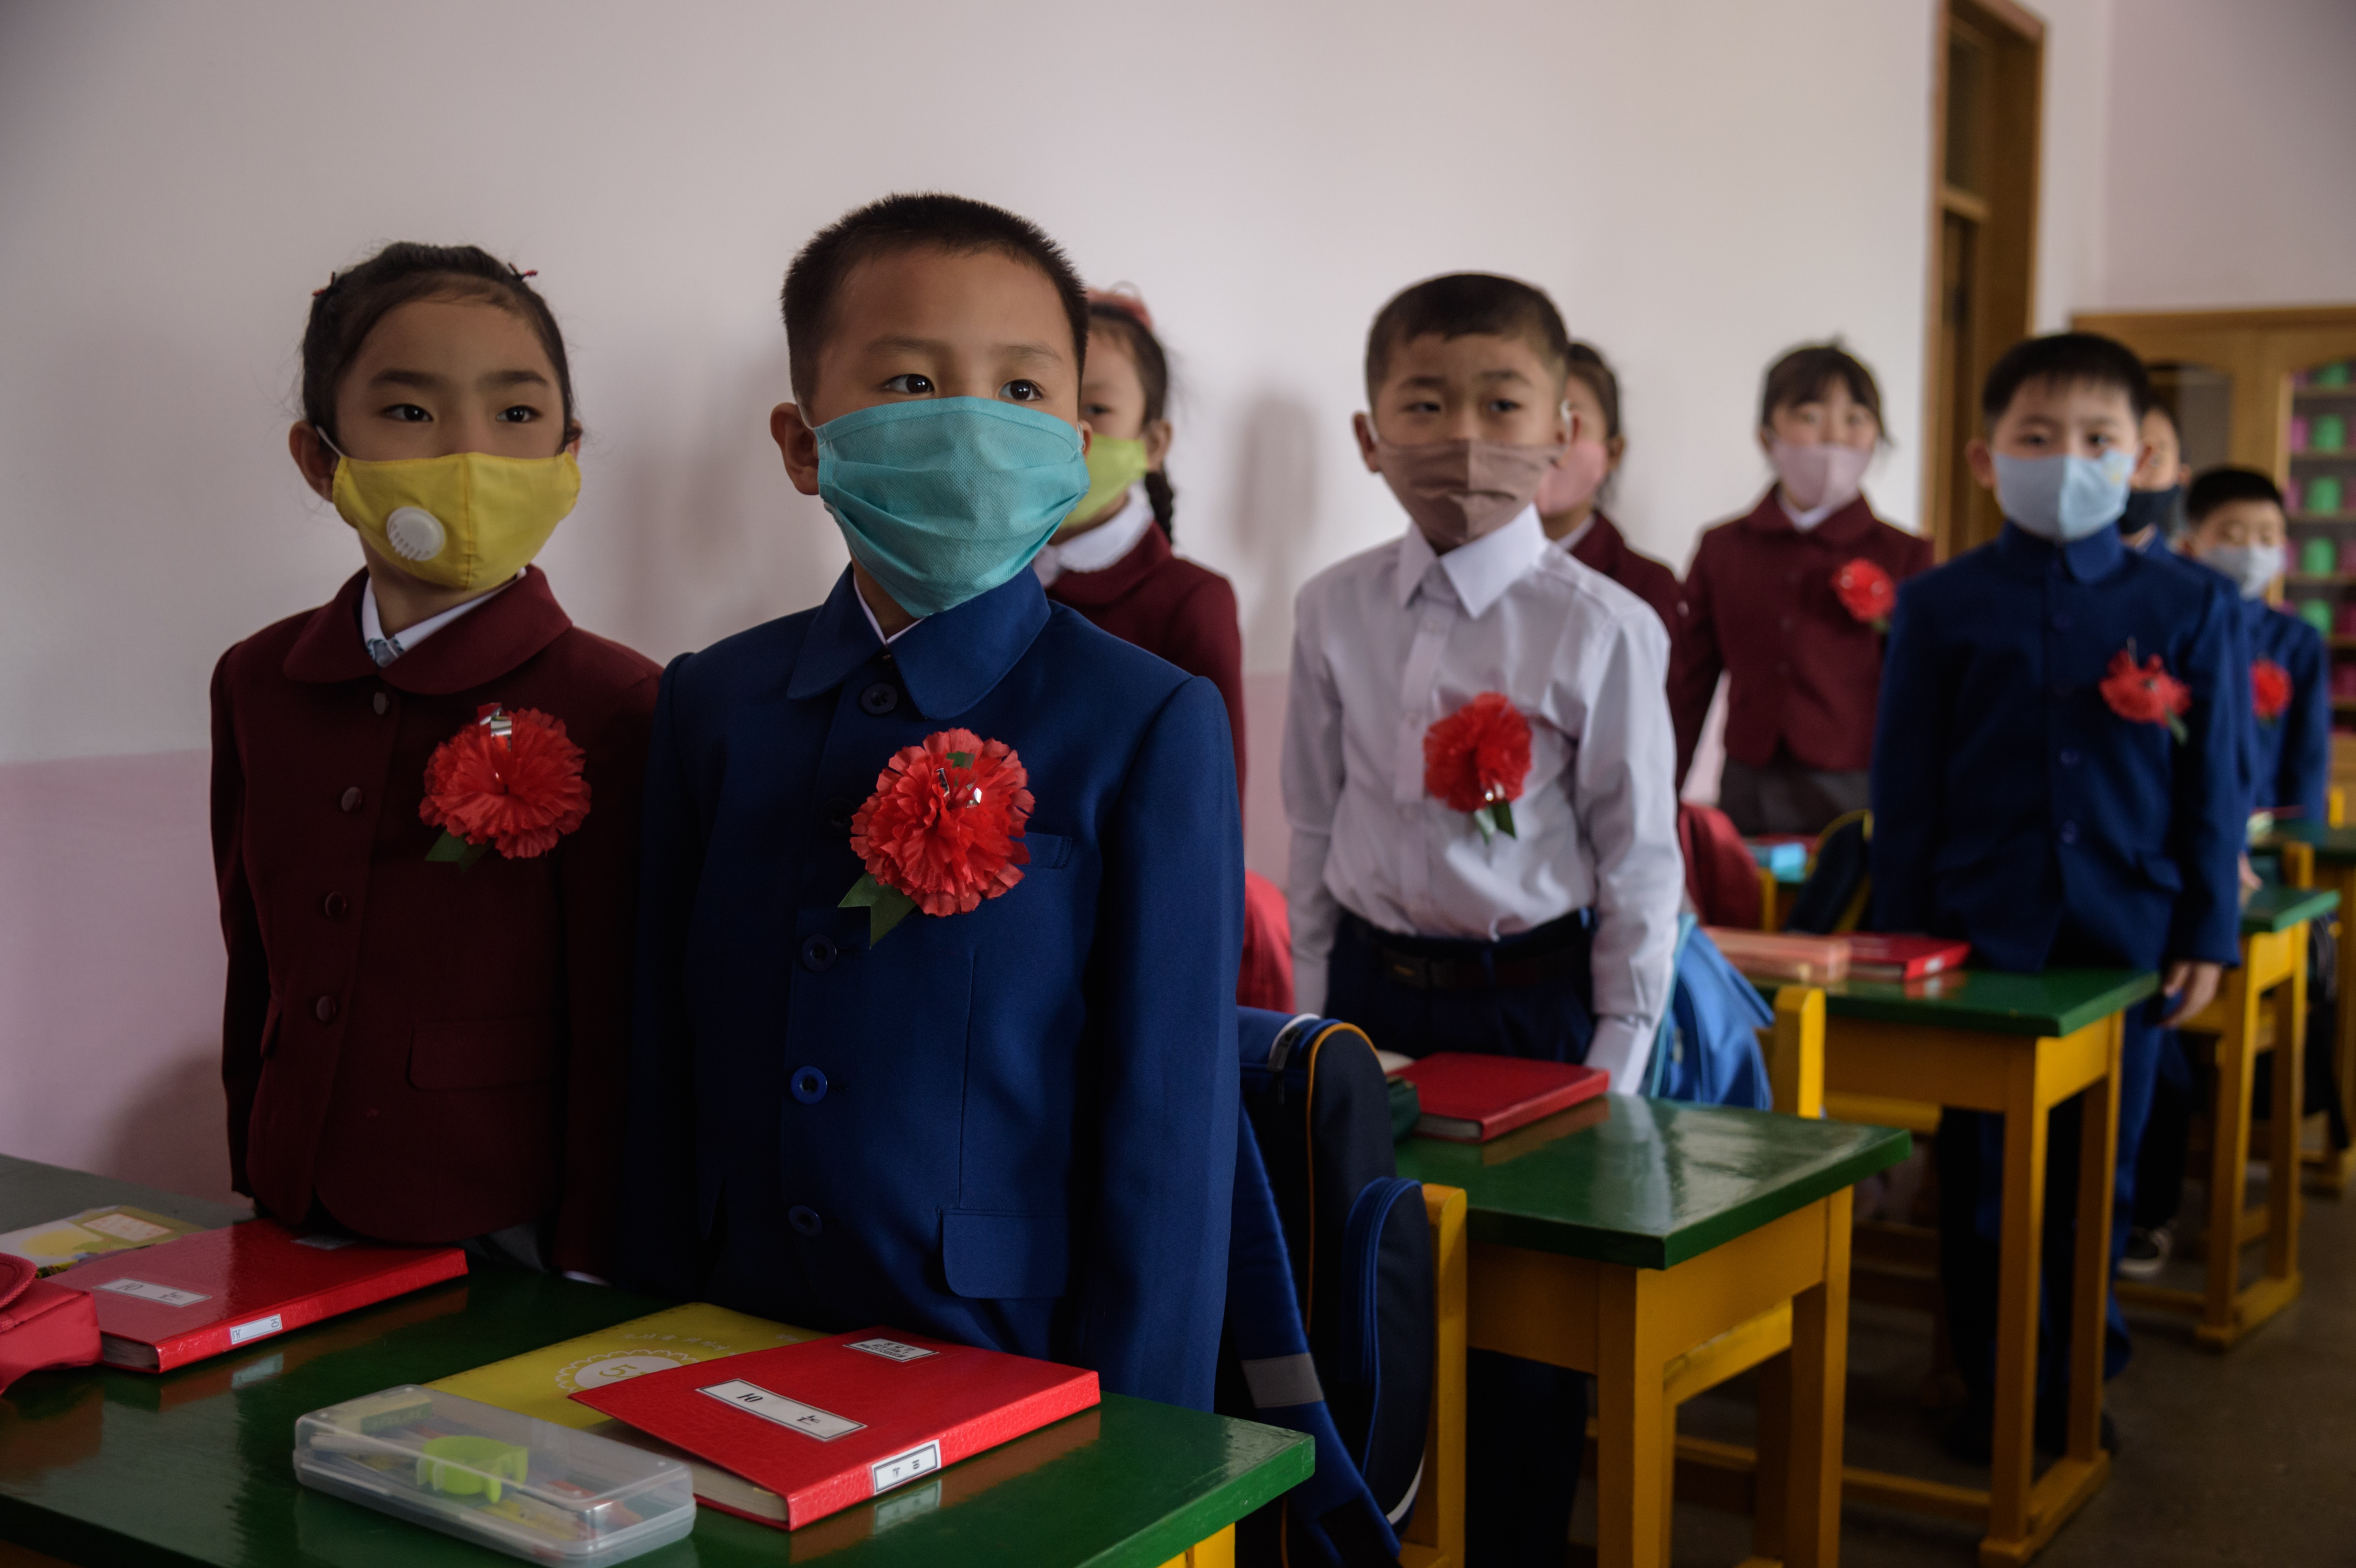 يرتدي أطفال المدارس الابتدائية في بيونغ يانغ أقنعة الوجه كإجراء وقائي ضد COVID-19 منذ عودة الفصول الدراسية في يونيو 2020.